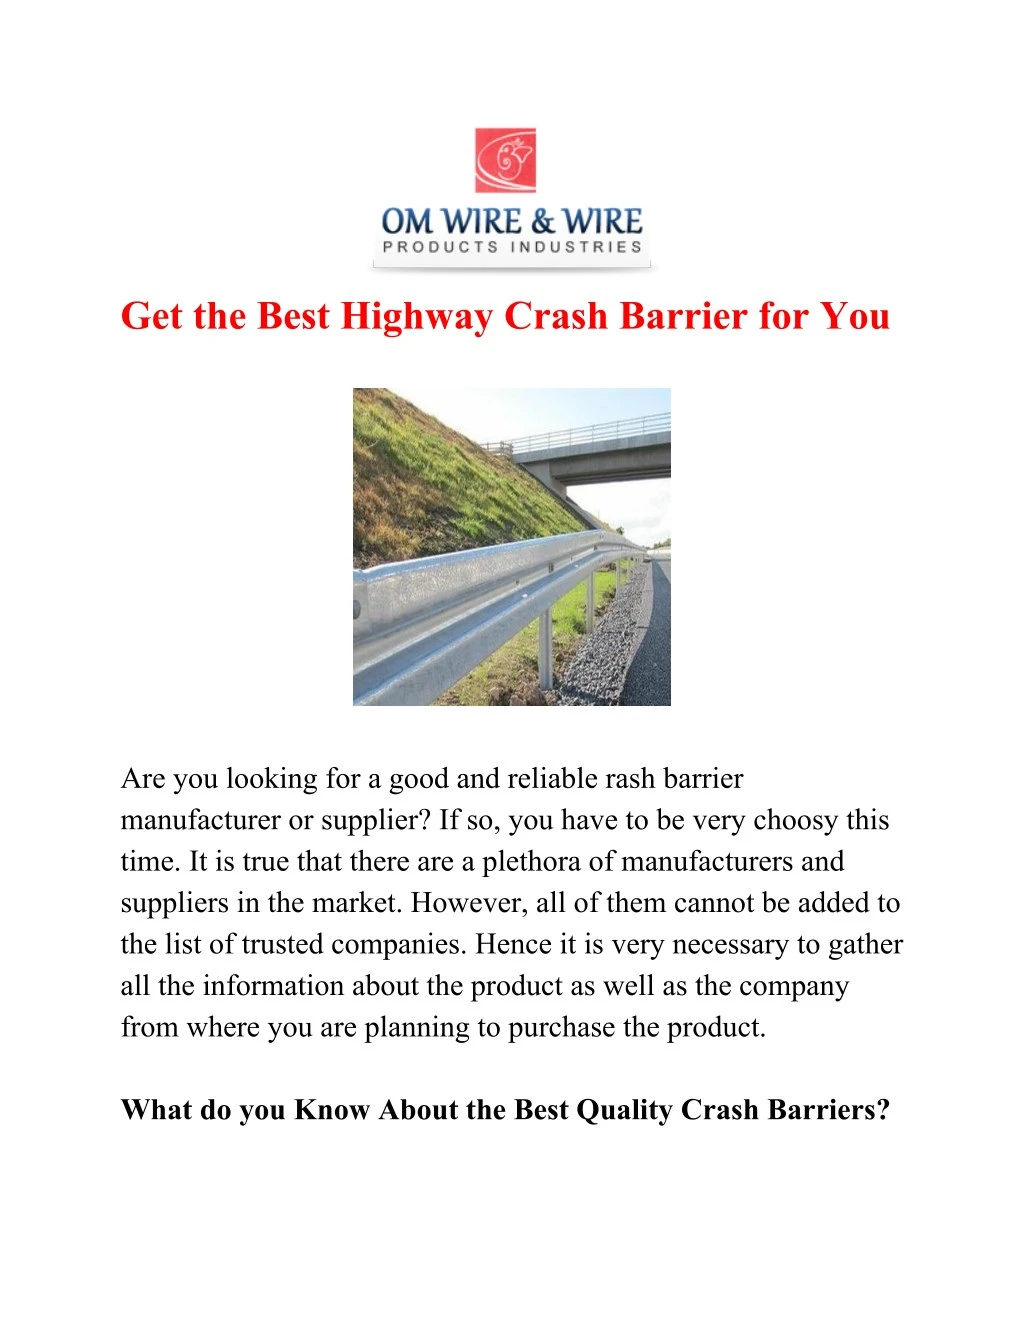 get the best highway crash barrier for you